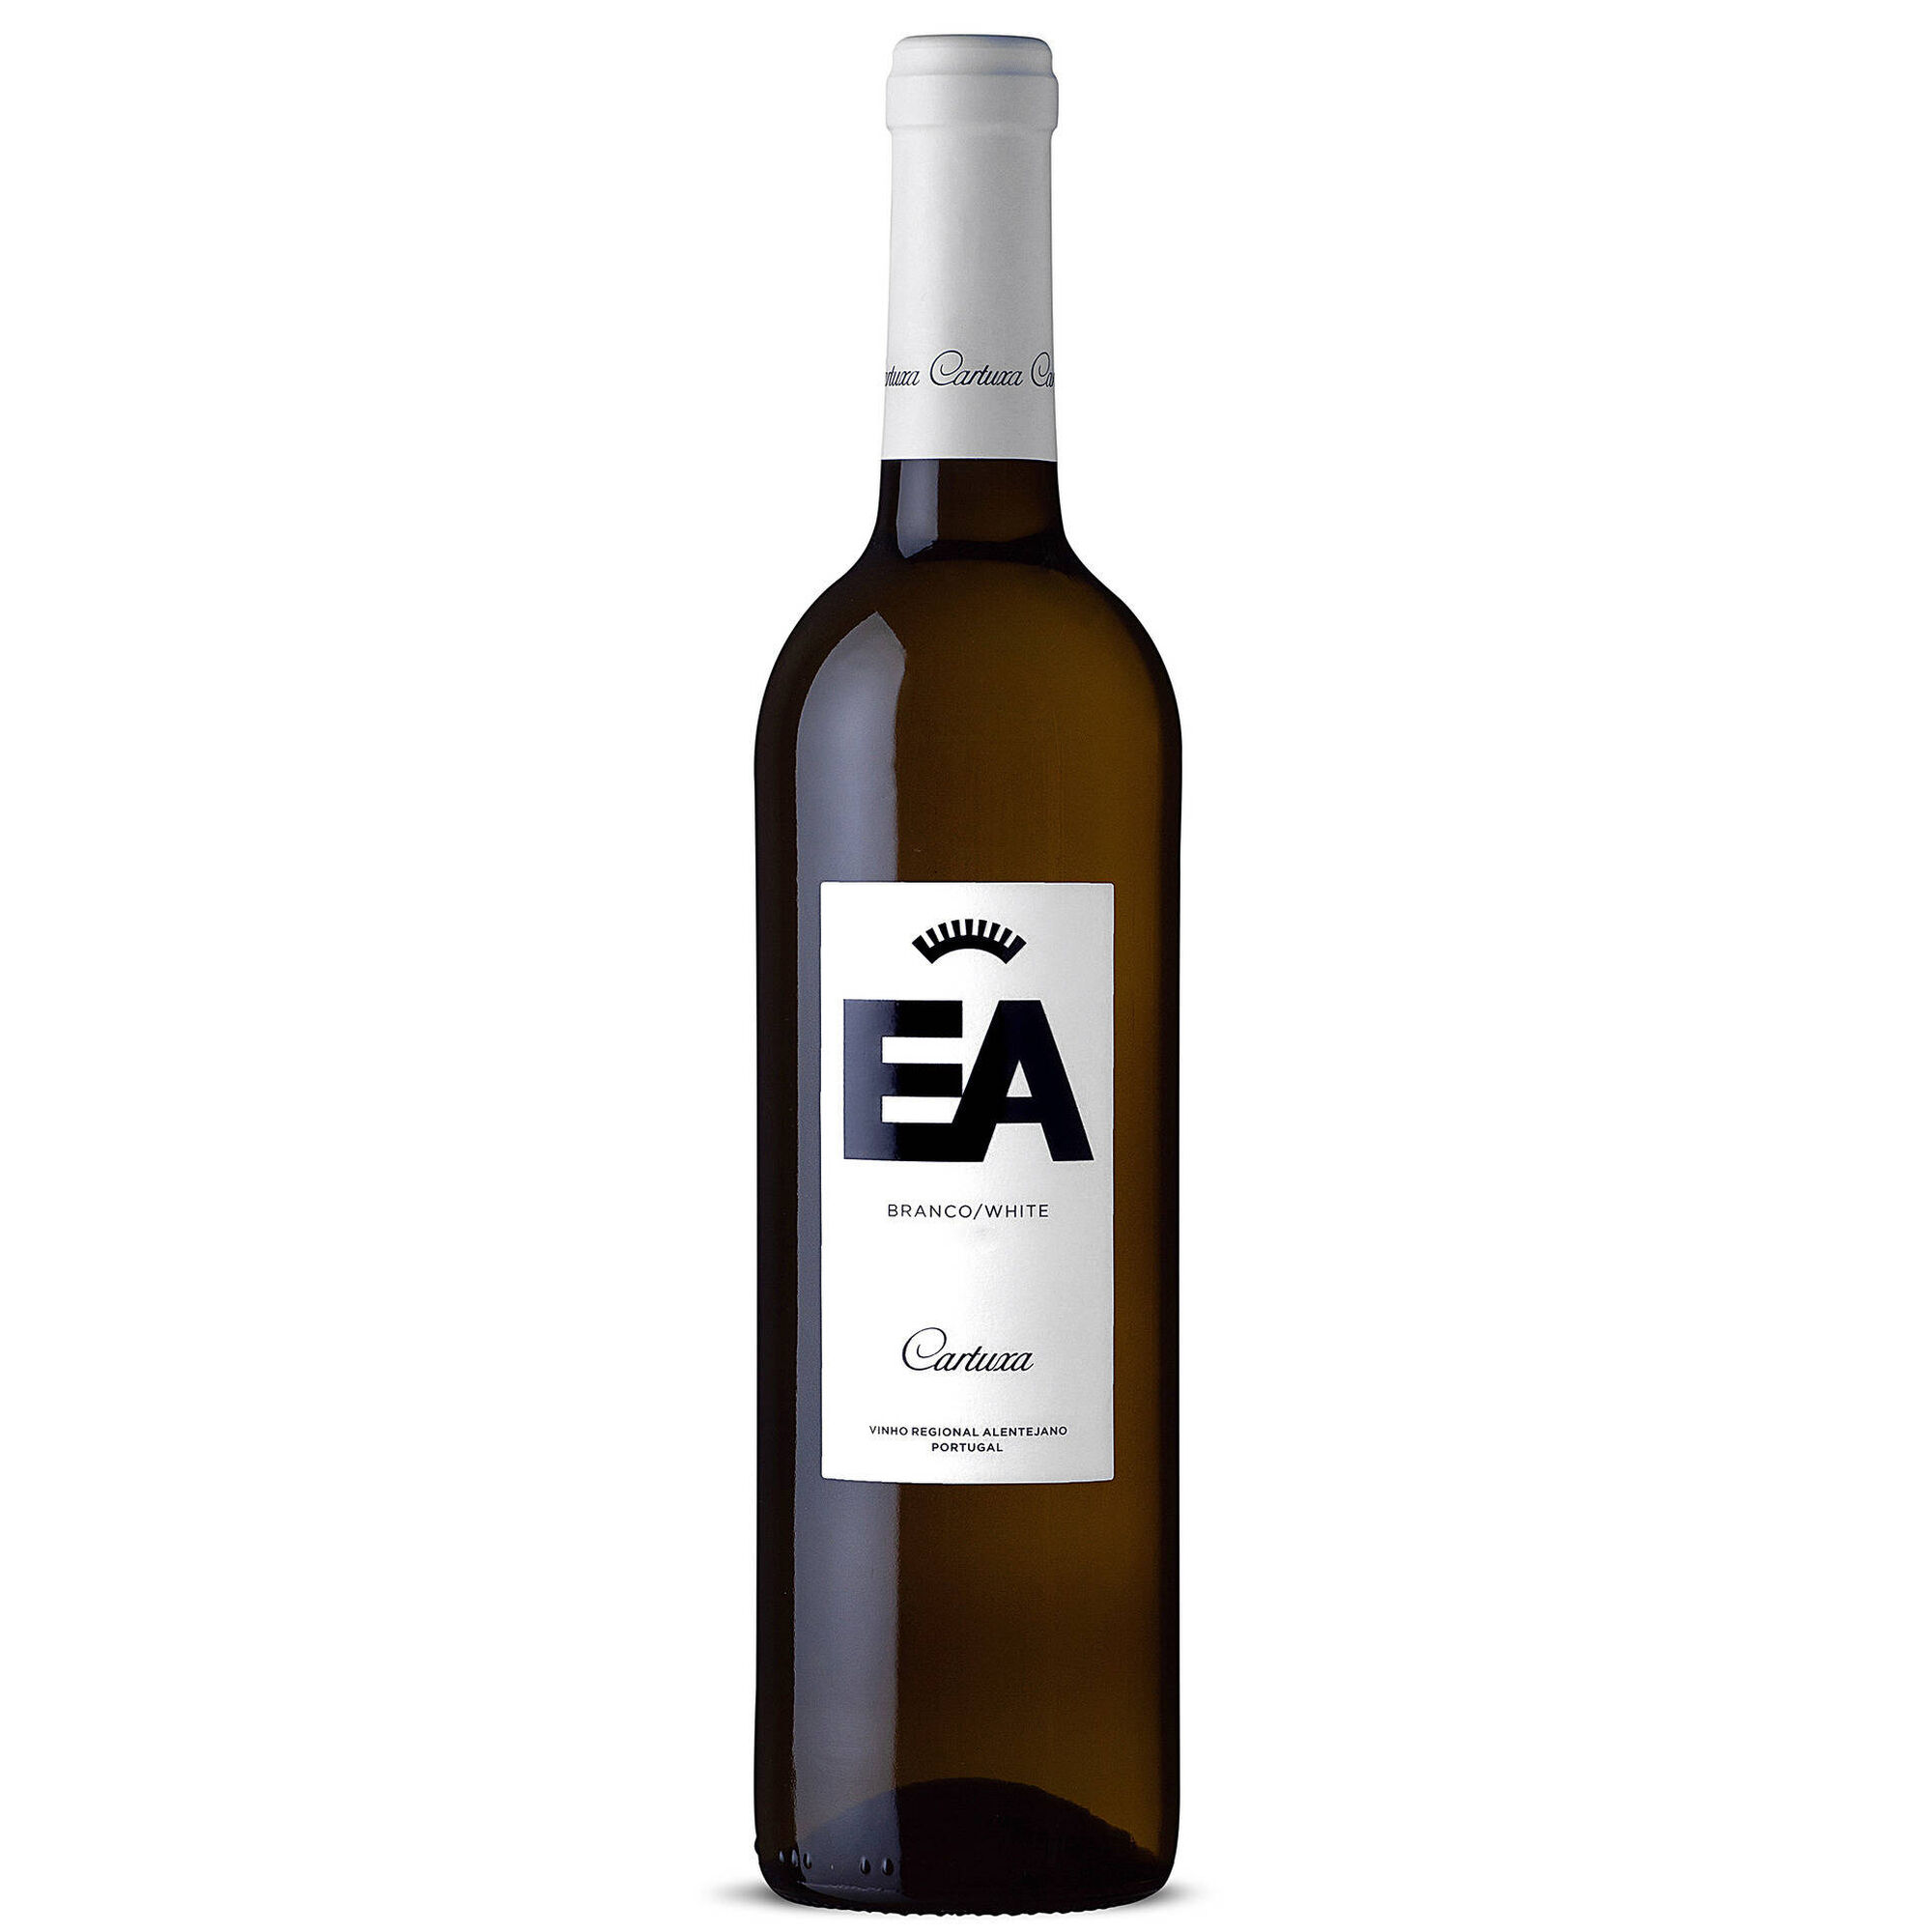 EA Regional Alentejano Vinho Branco